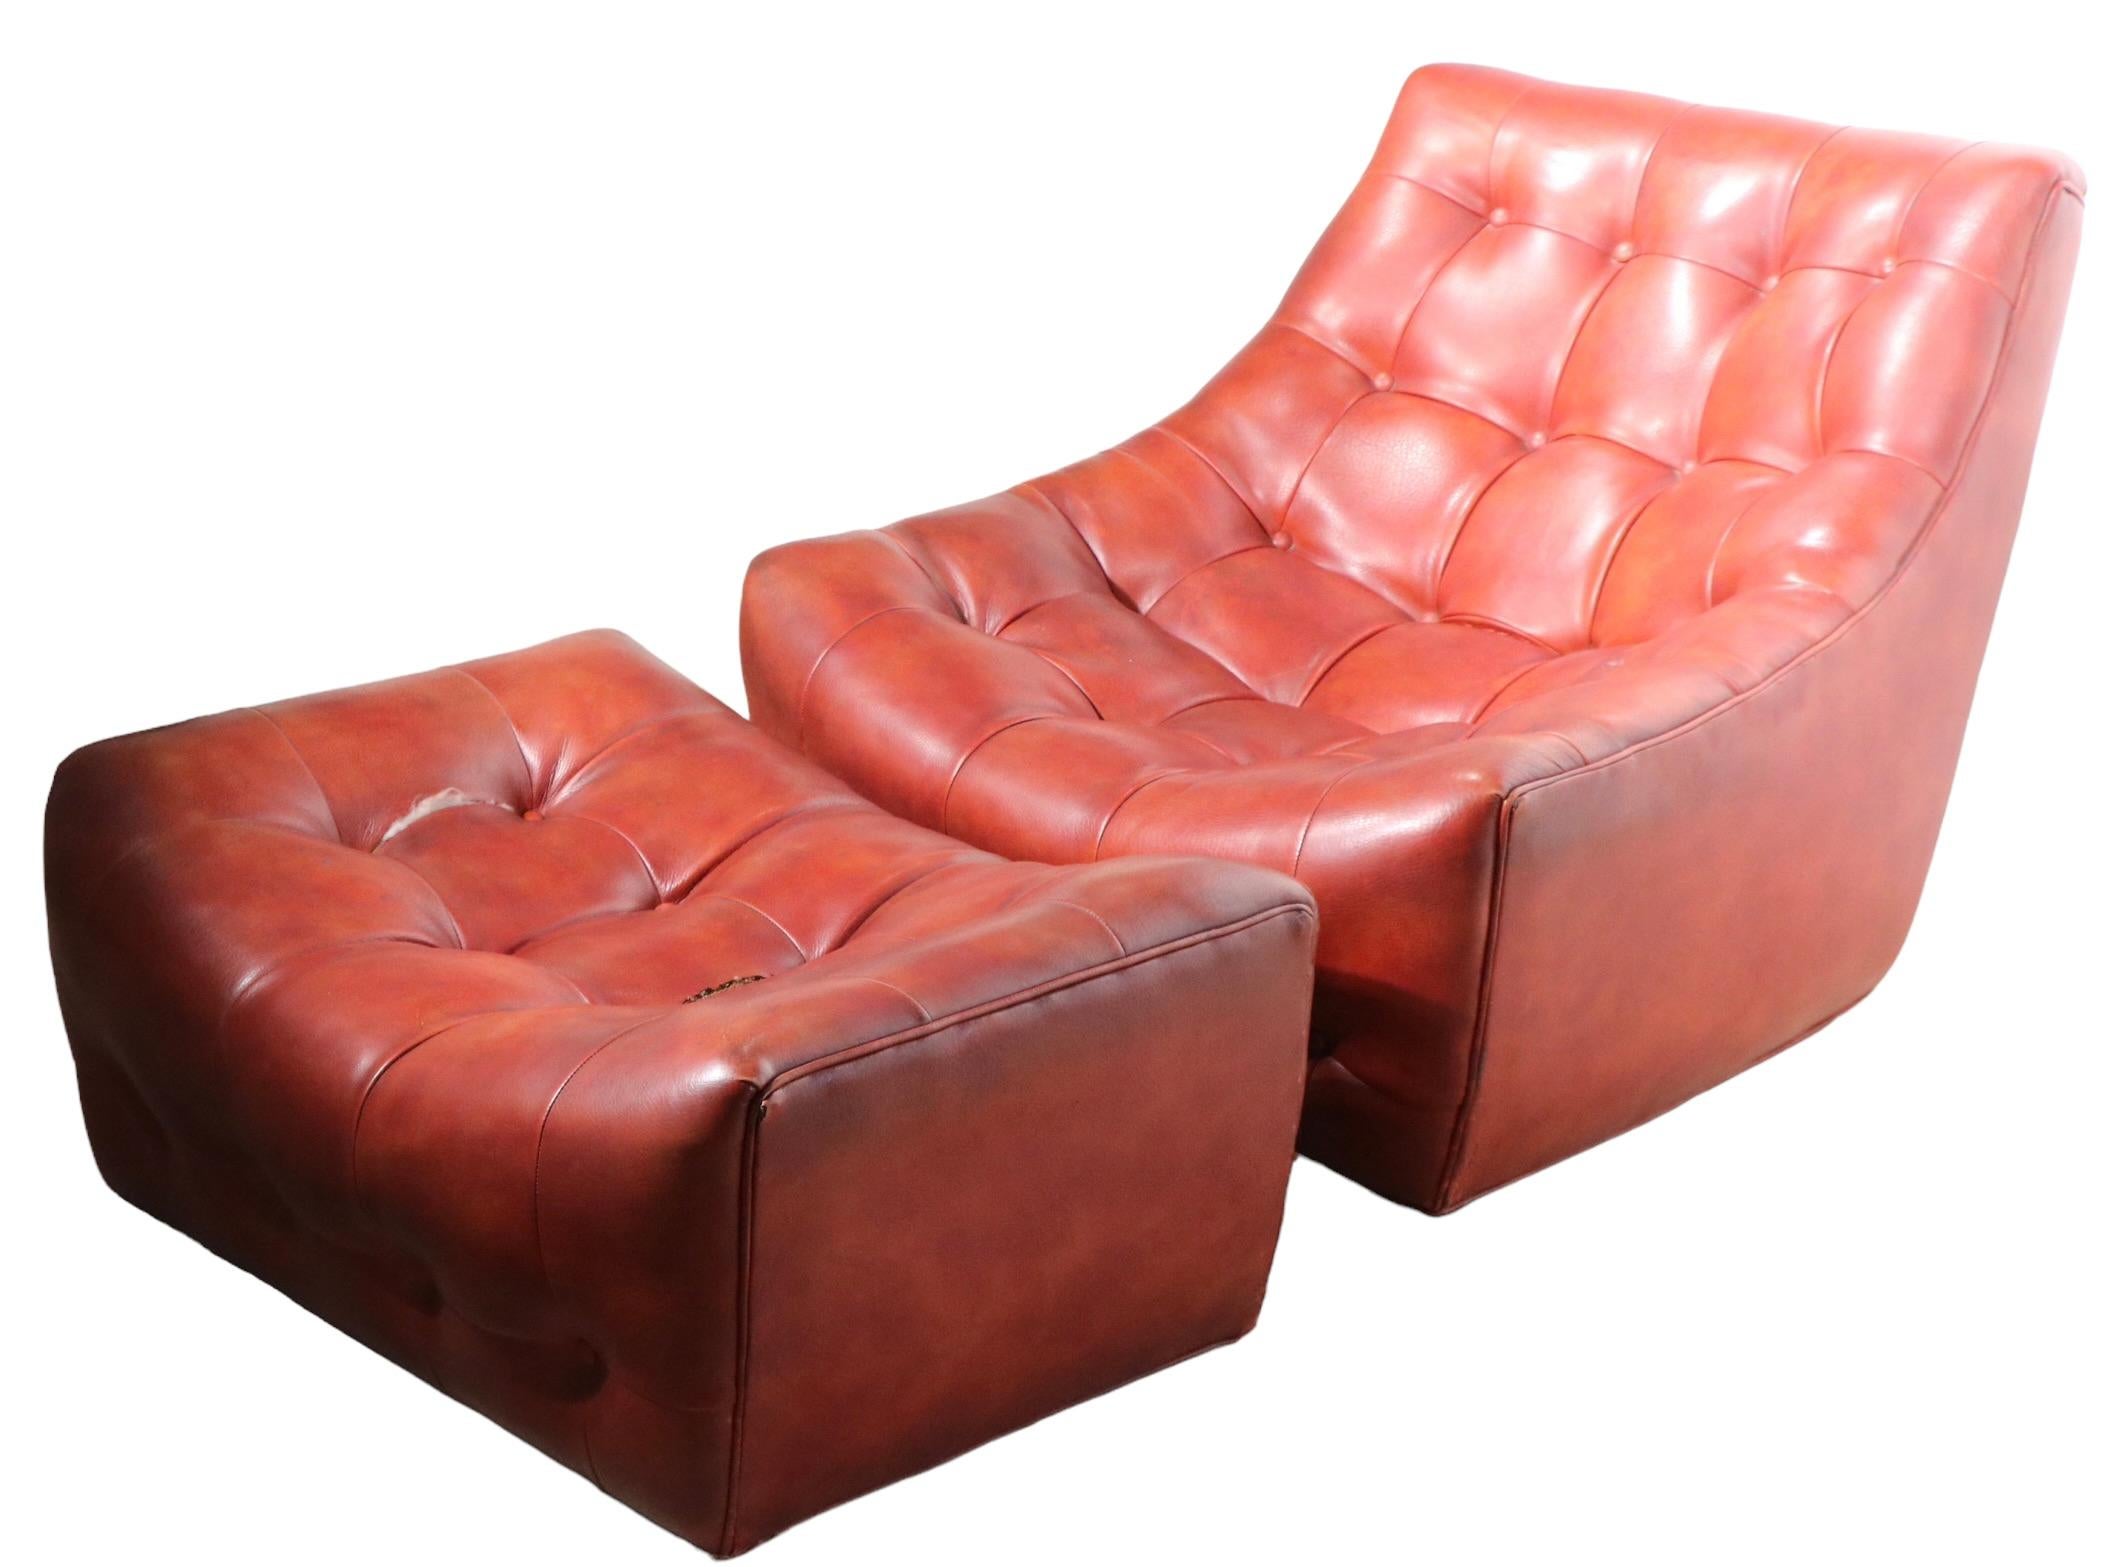 Seltener Loungesessel und Ottomane in Schalenform, entworfen von Milo Baughman, hergestellt von Thayer Coggin, ca. 1970. Der Stuhl ist mit Kunstleder gepolstert und hat eine getuftete Oberfläche, die Ottomane hat zwei Risse an den Nähten - siehe